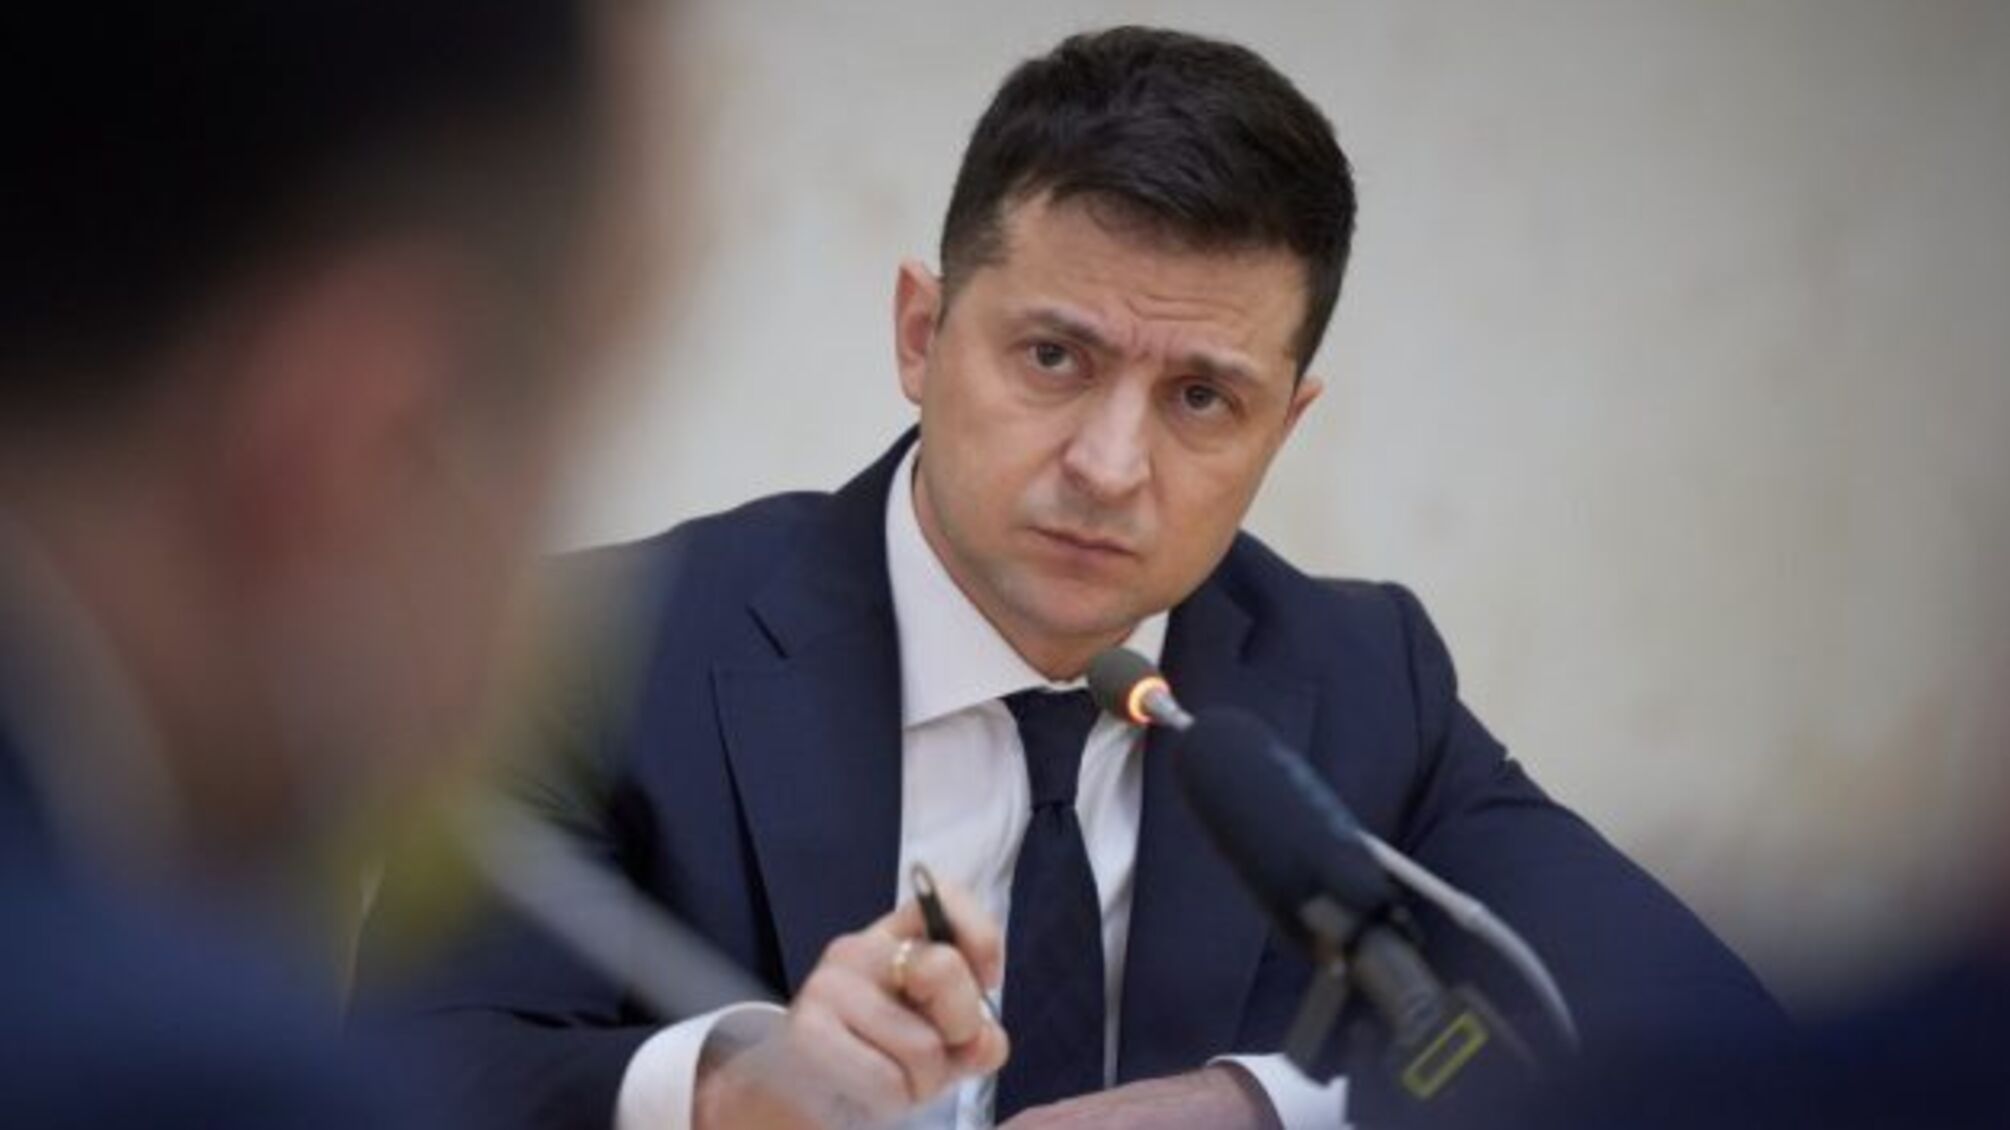 Избрание руководителя САП: Зеленский хочет закрыть вопрос до конца года